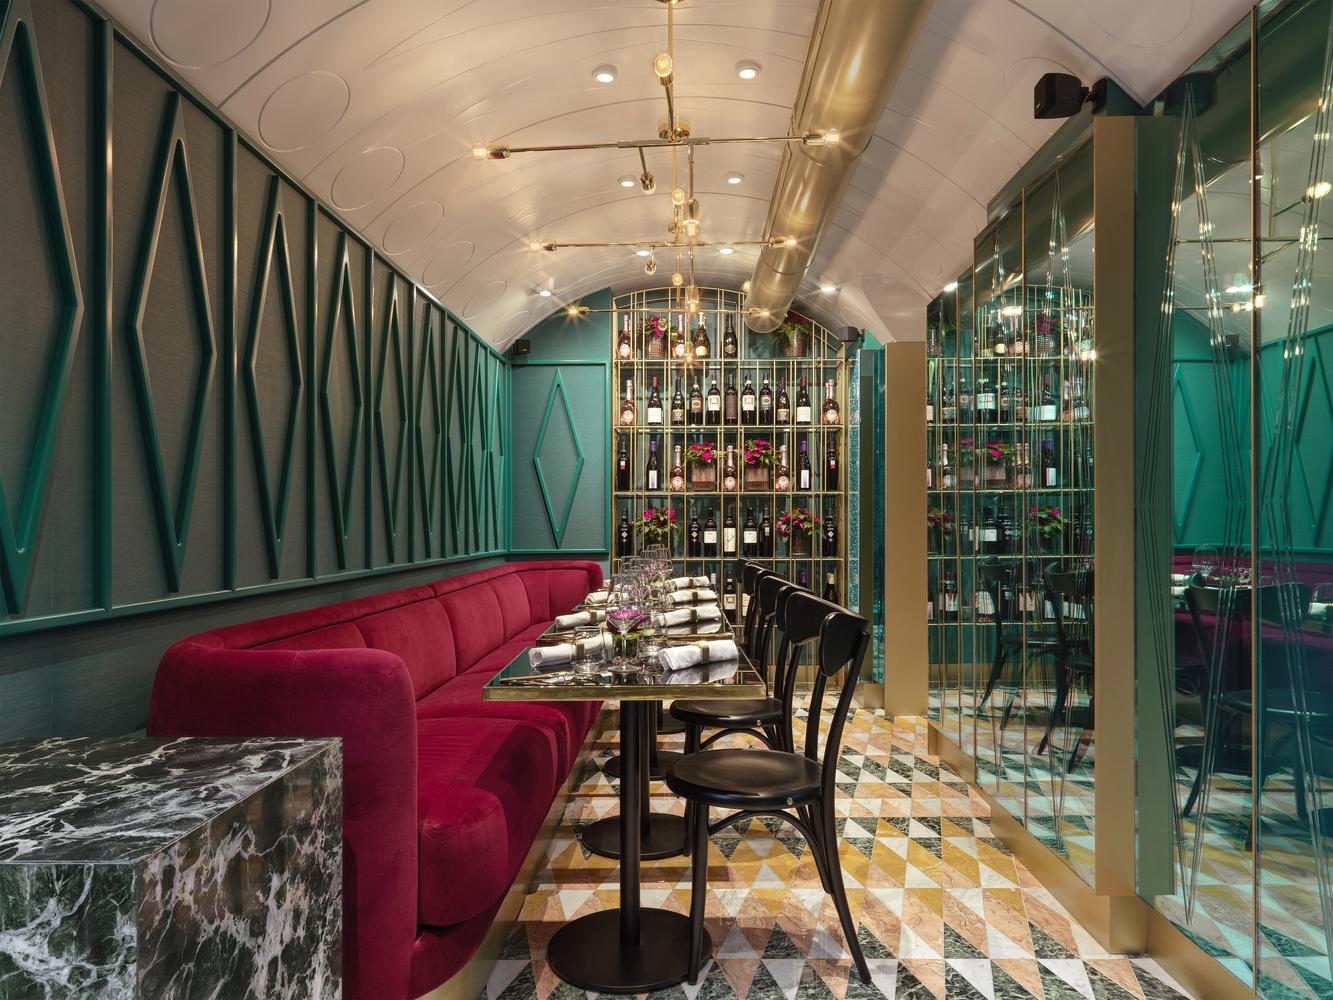 倫敦Covent Garden全新餐廳 盡顯精緻典雅意大利風格